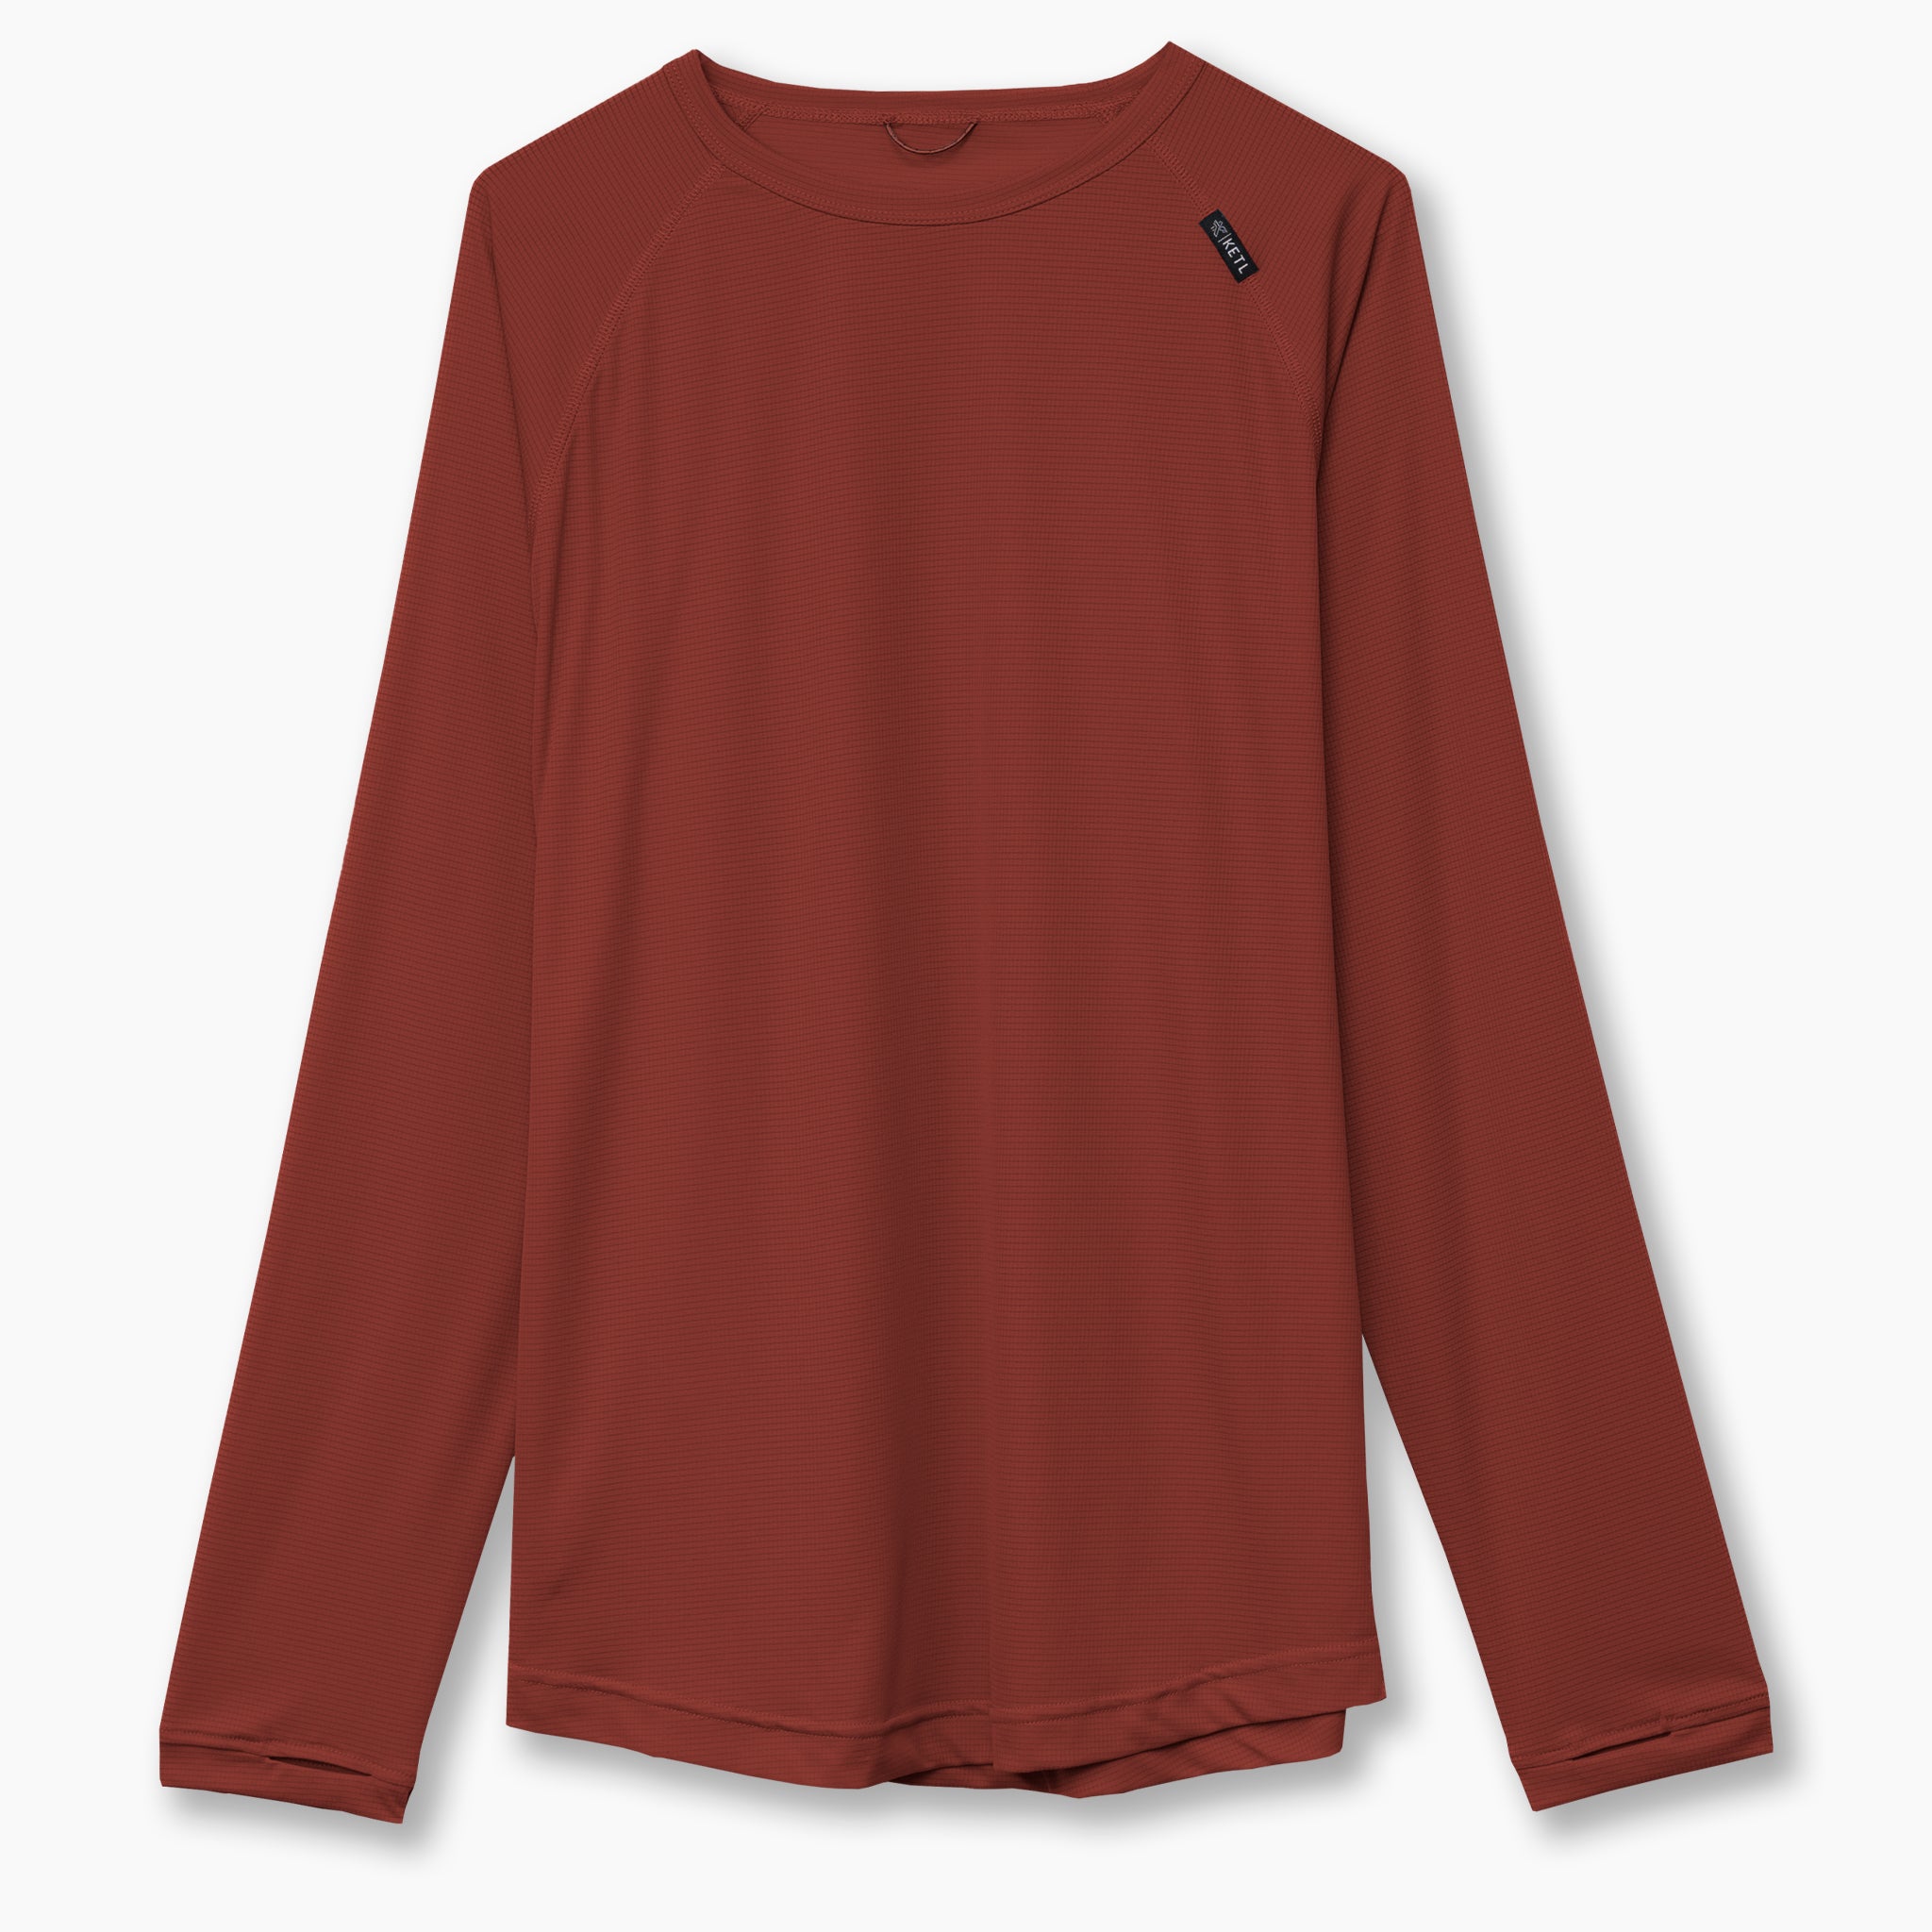 Sun Shirt - SPF/UPF 30+ Sun Protection Lightweight Long Sleeve Shirt Men's, Burgundy / M